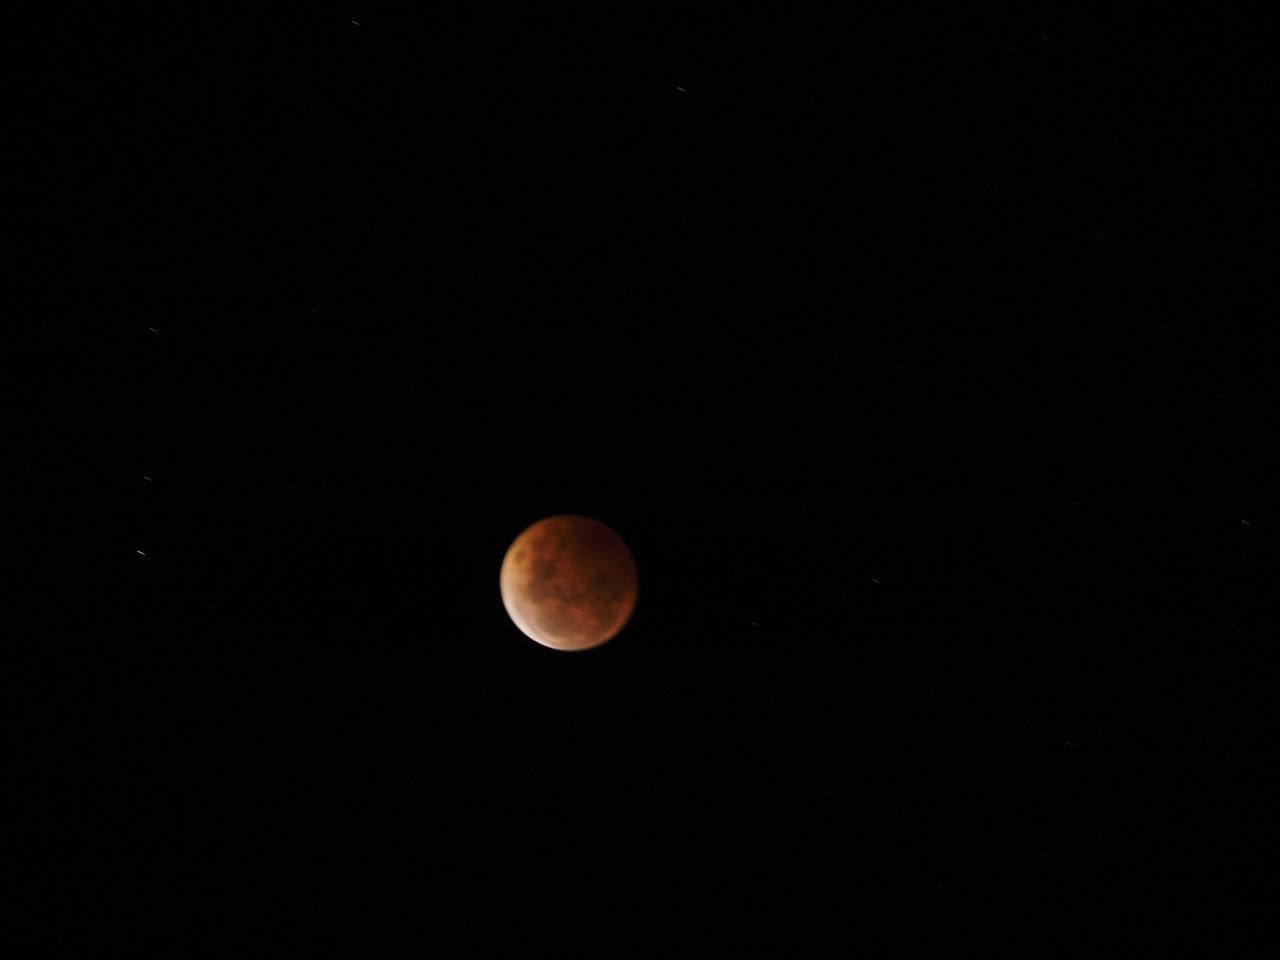 Al otro lado del mundo, la luna de sangre se dejó ver por la noche. Hayden Himburg vio el eclipse desde Dunedin, Nueva Zelanda, el miércoles justo antes de la medianoche. "He visto lunas de sangre anteriormente y siempre son impresionantes", dijo. 